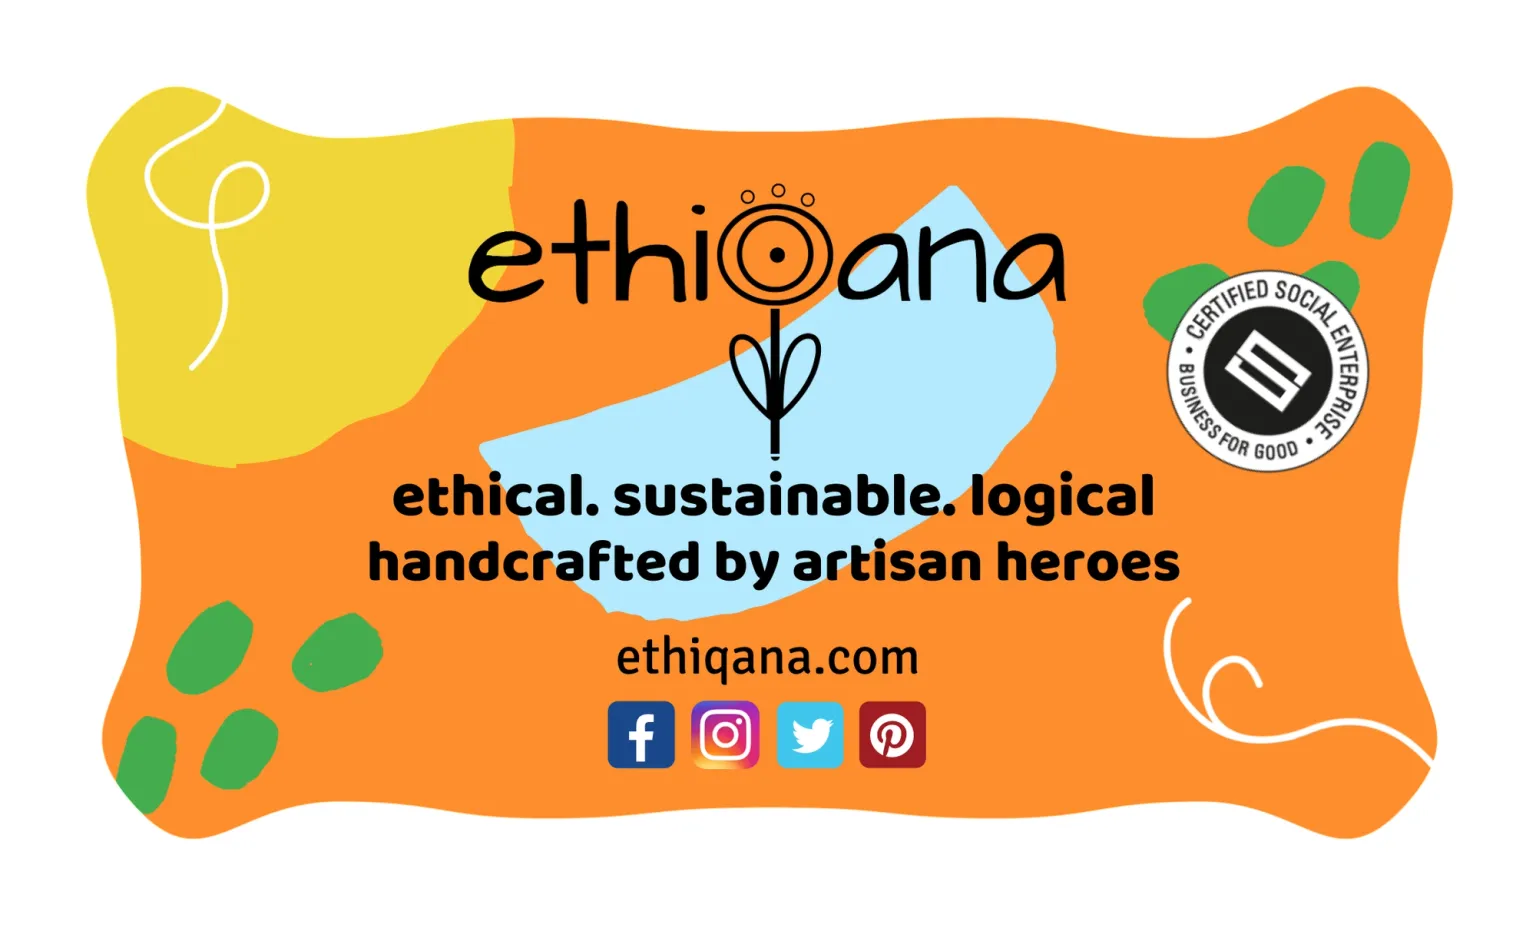 Social Enterprise supporting artisanry